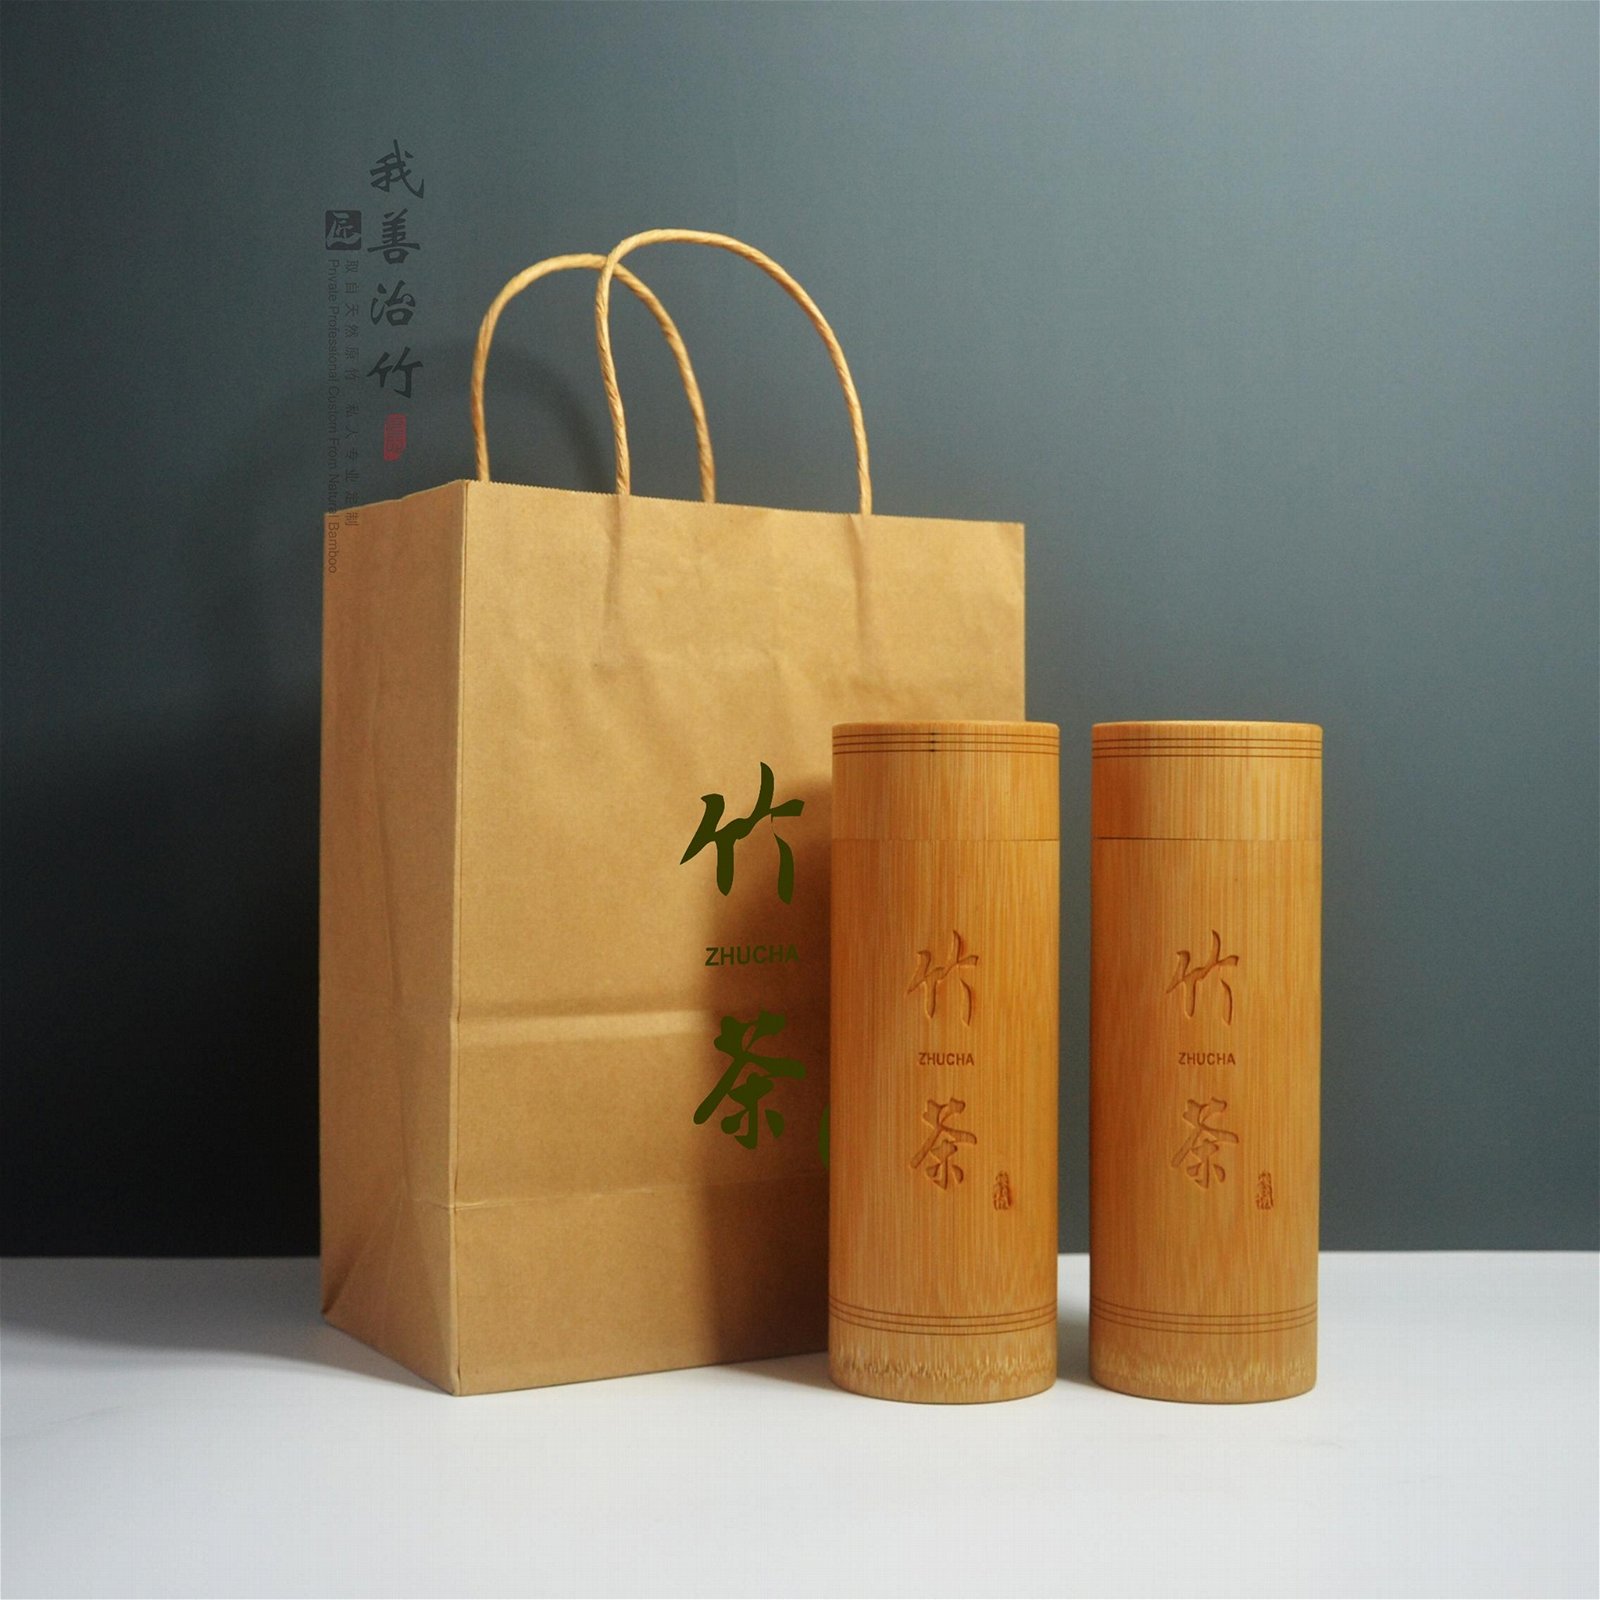 竹茶葉筒竹包裝工藝包裝竹茶葉罐